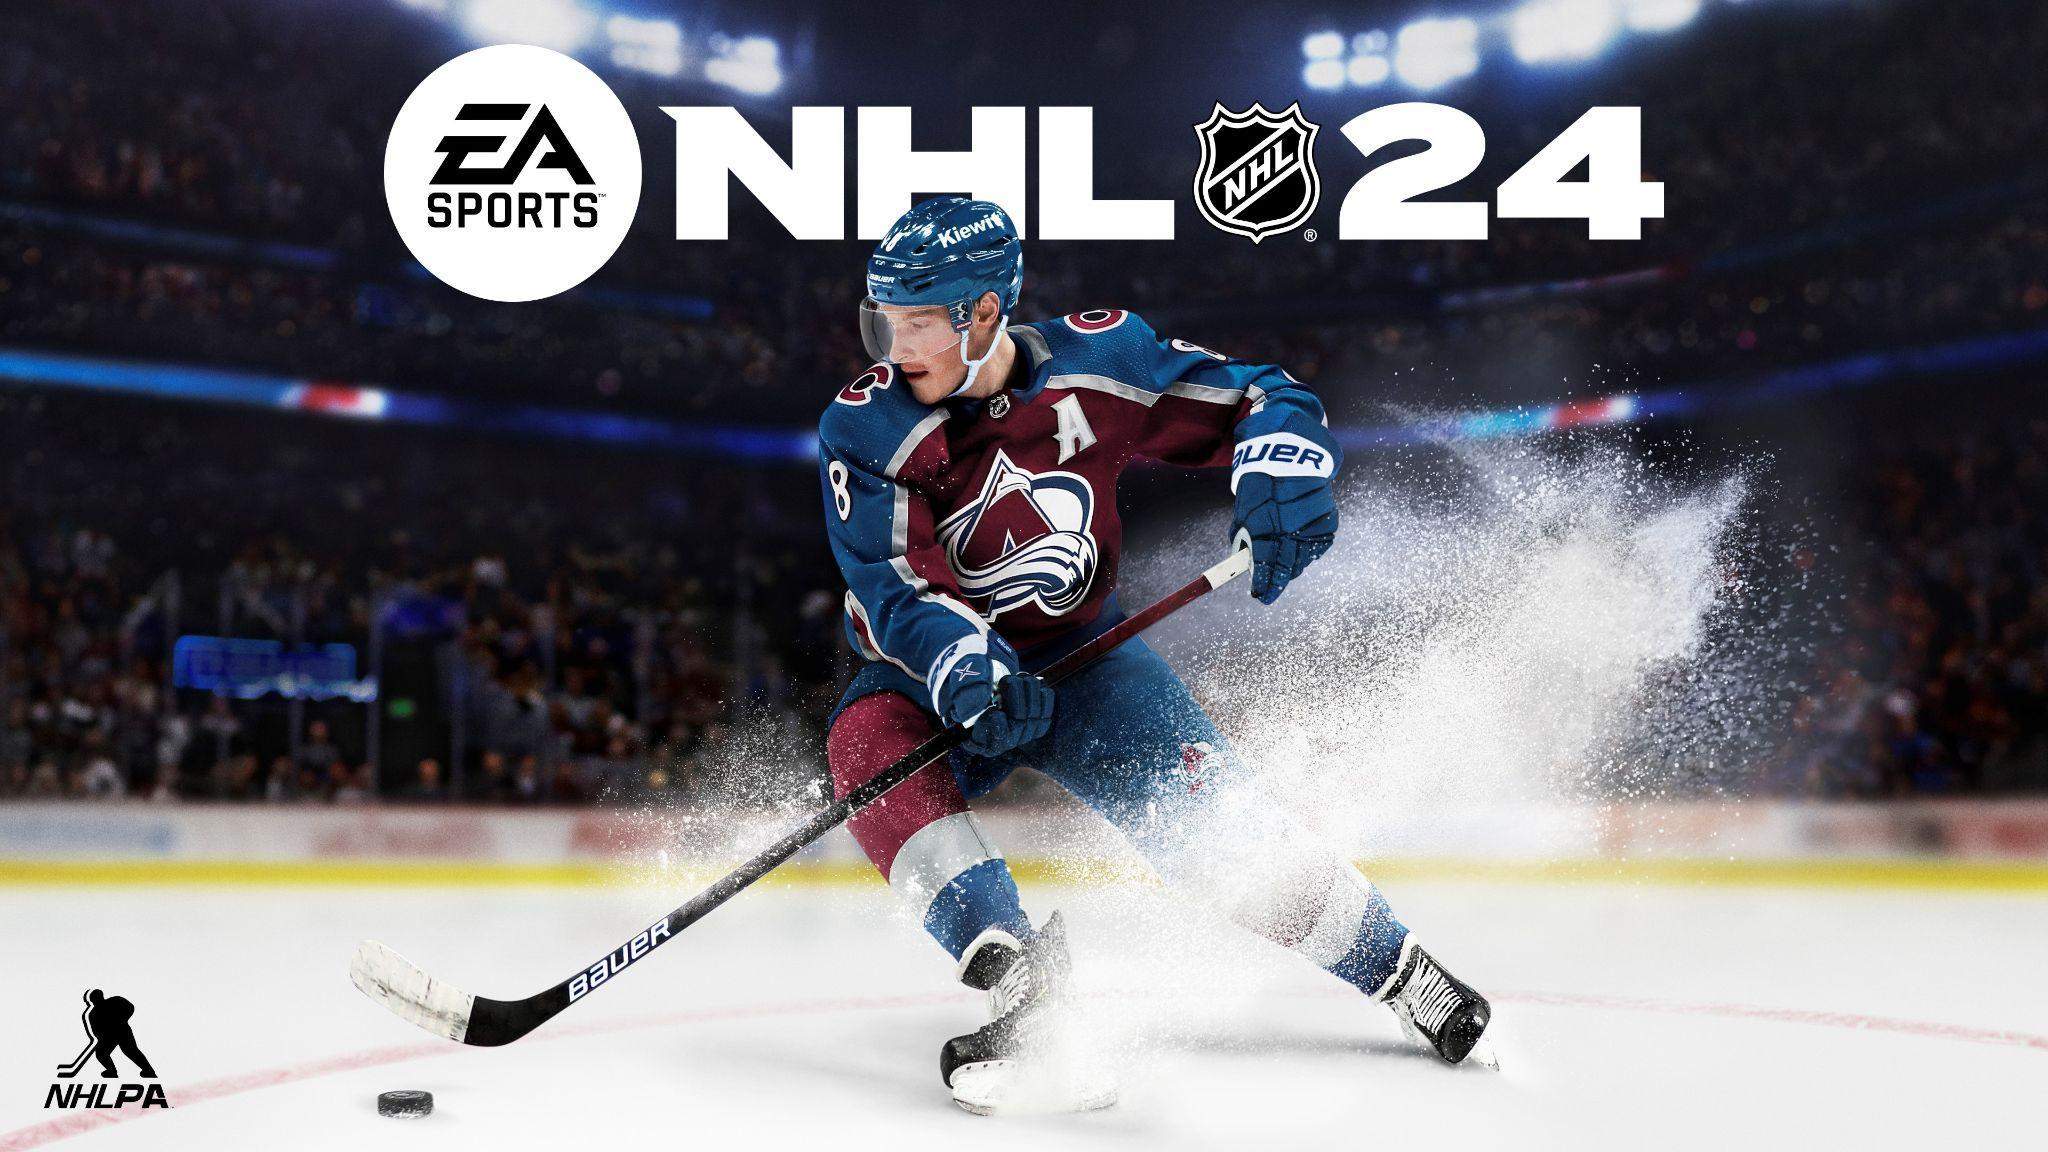 Jogo Xbox One NHL 22 (Formato Digital)